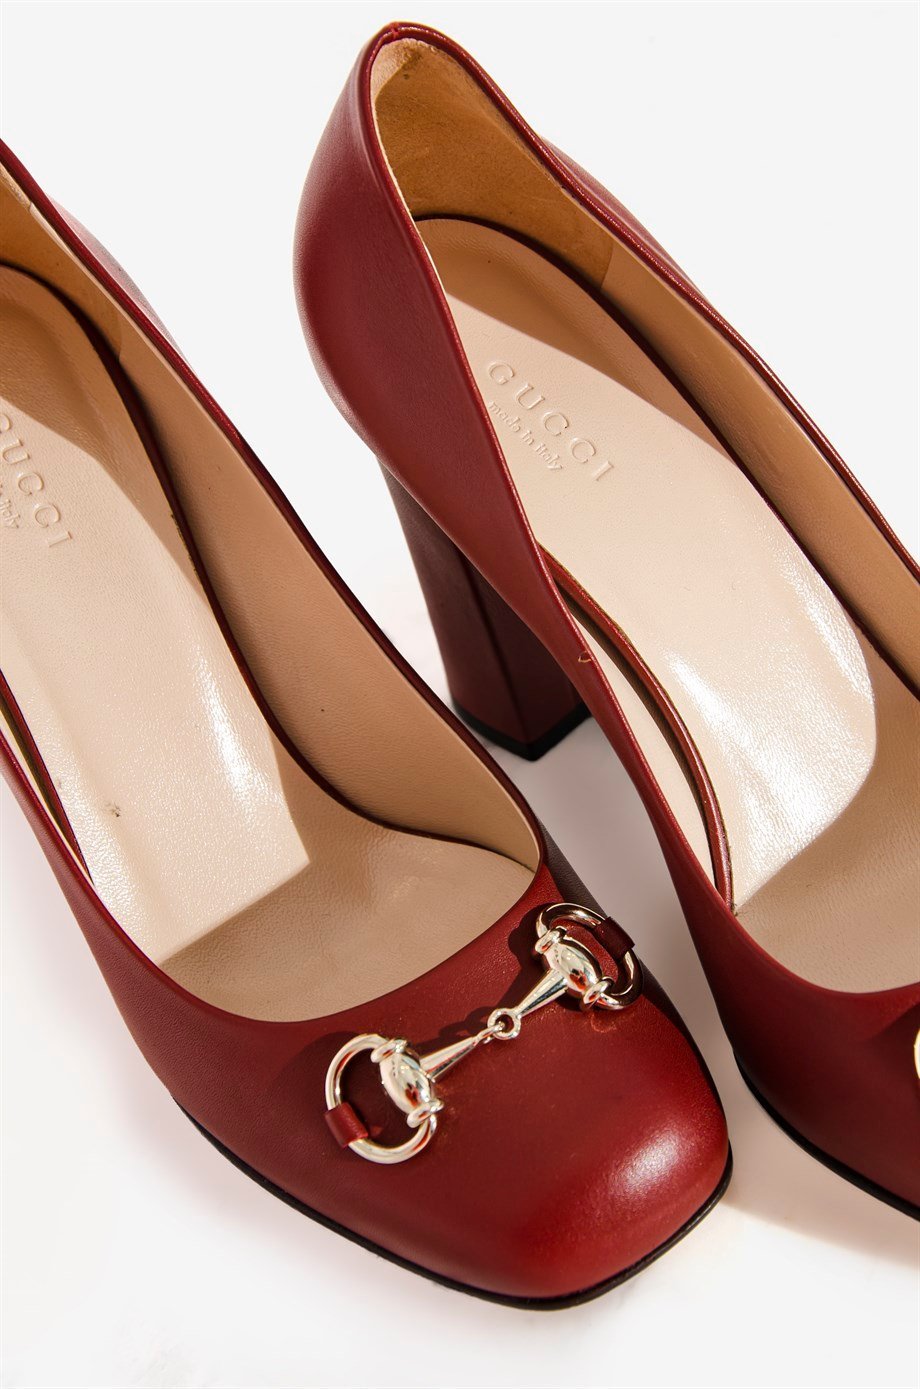 Gucci Bordo Renk 38 Beden Kadın Topuklu Ayakkabı